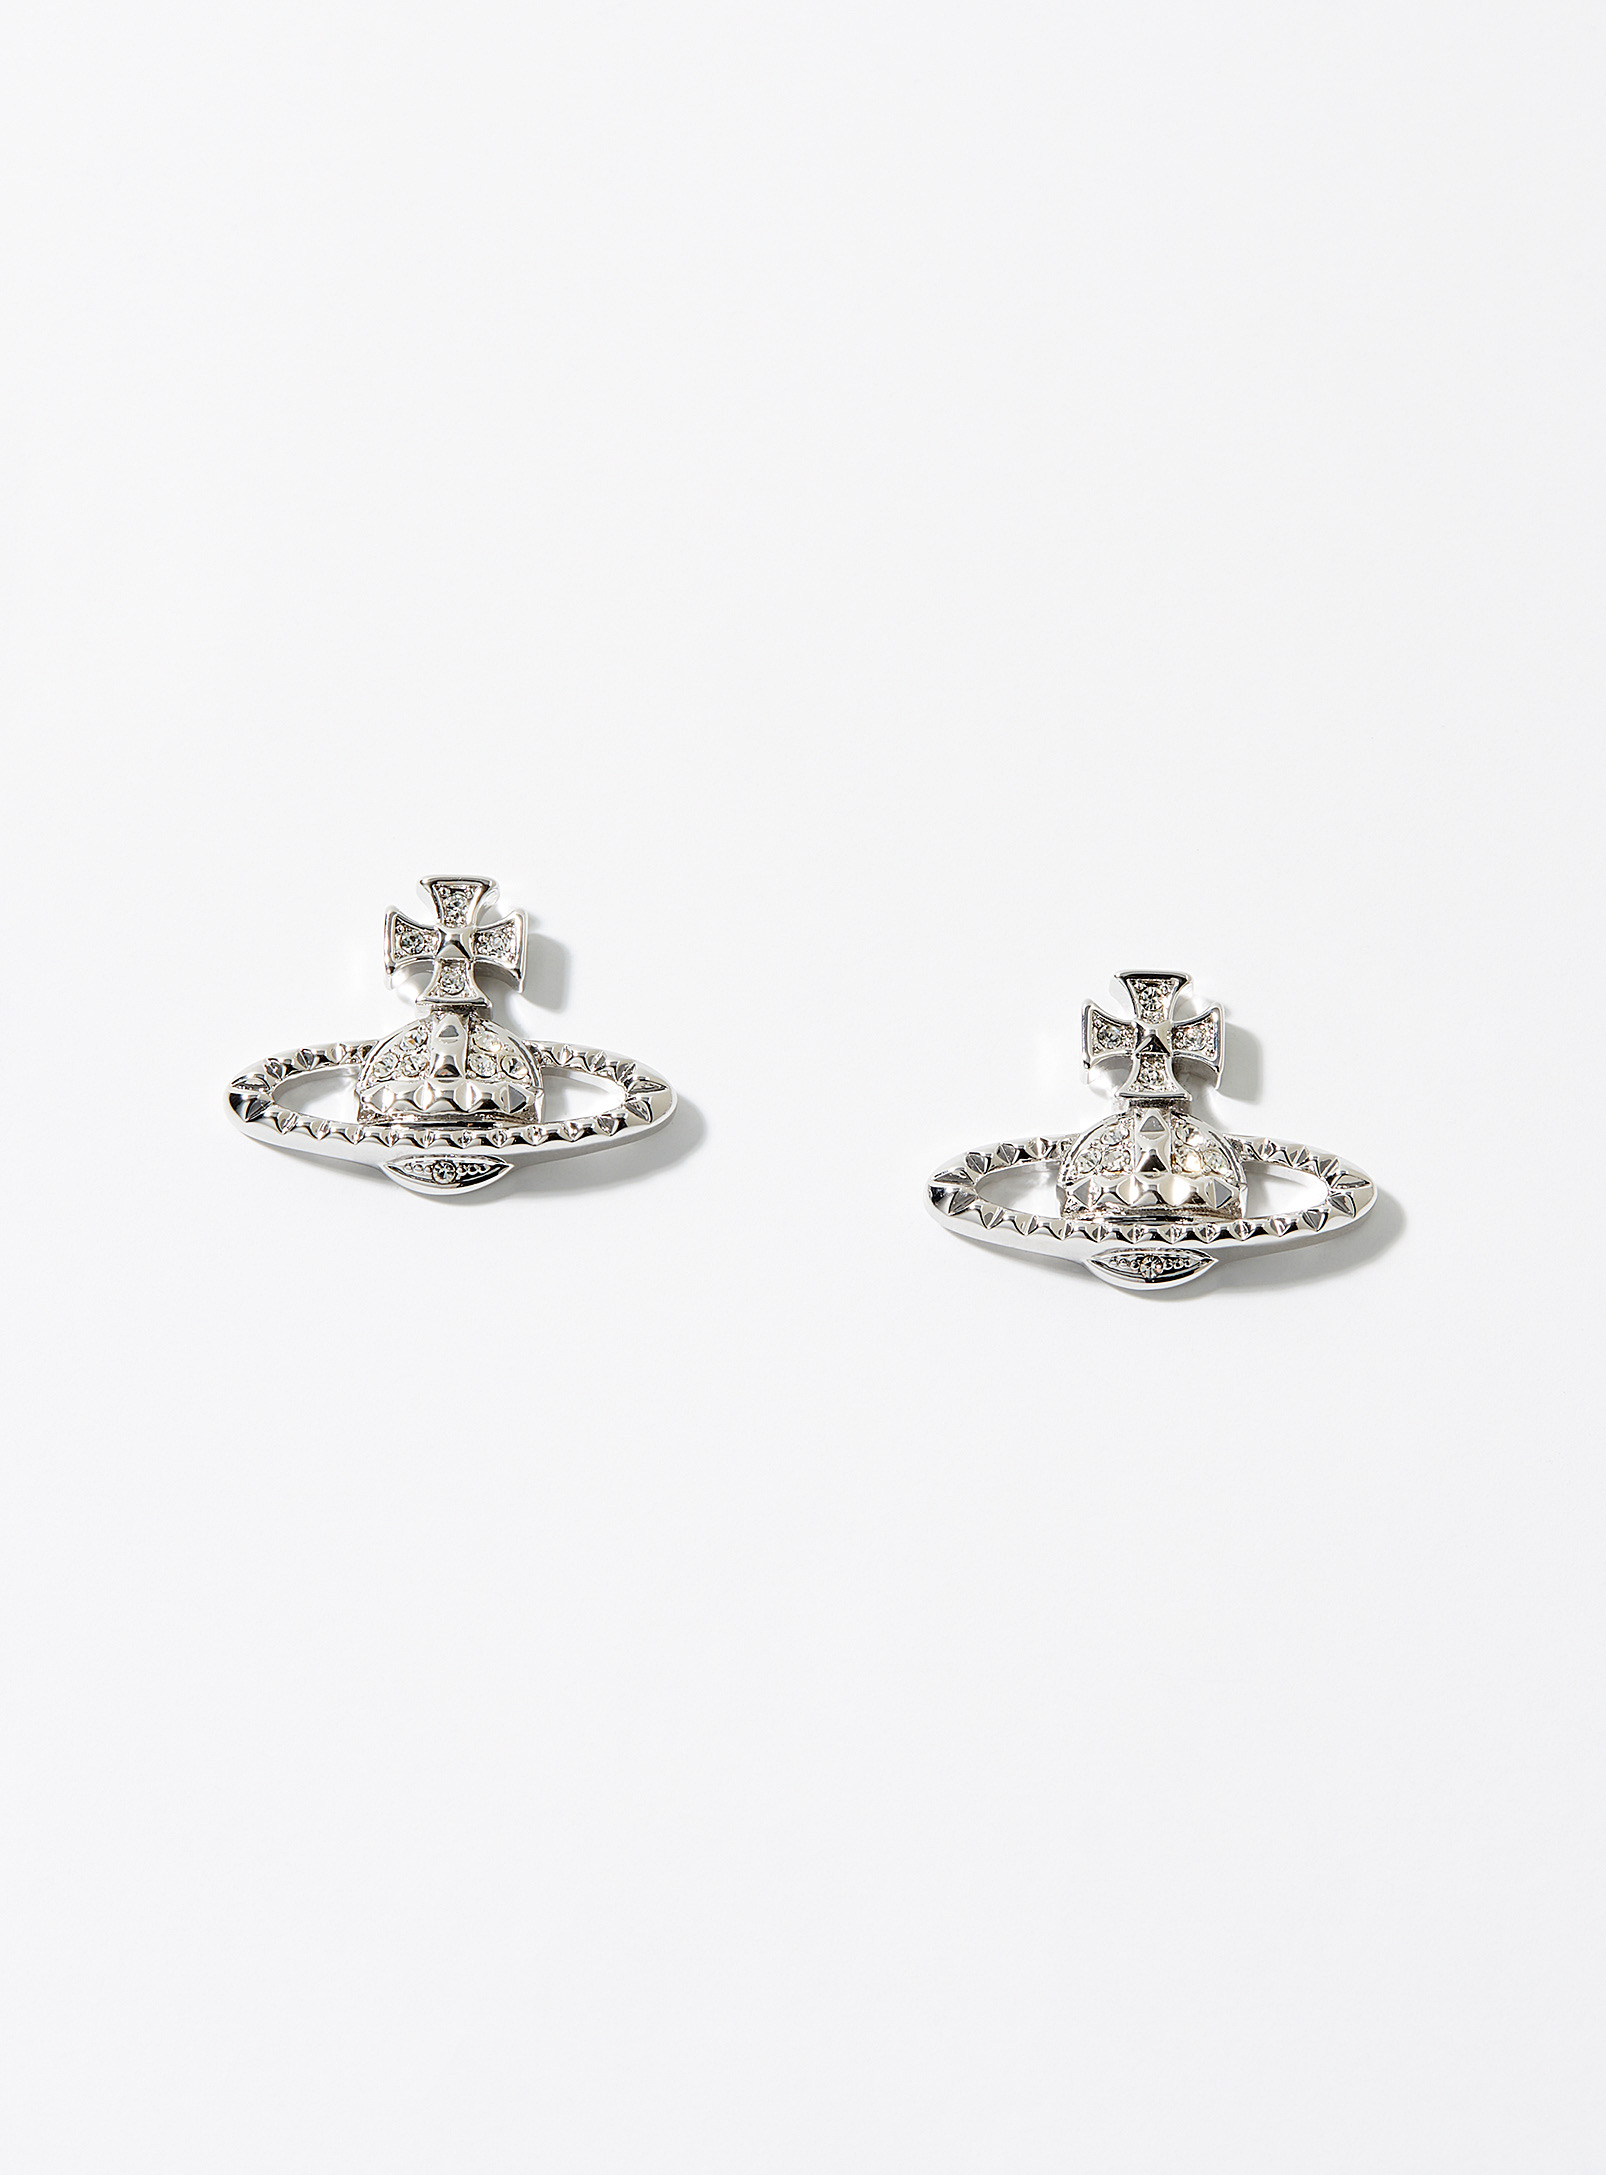 Vivienne Westwood Mayfair Bas Relief Earrings In Silver